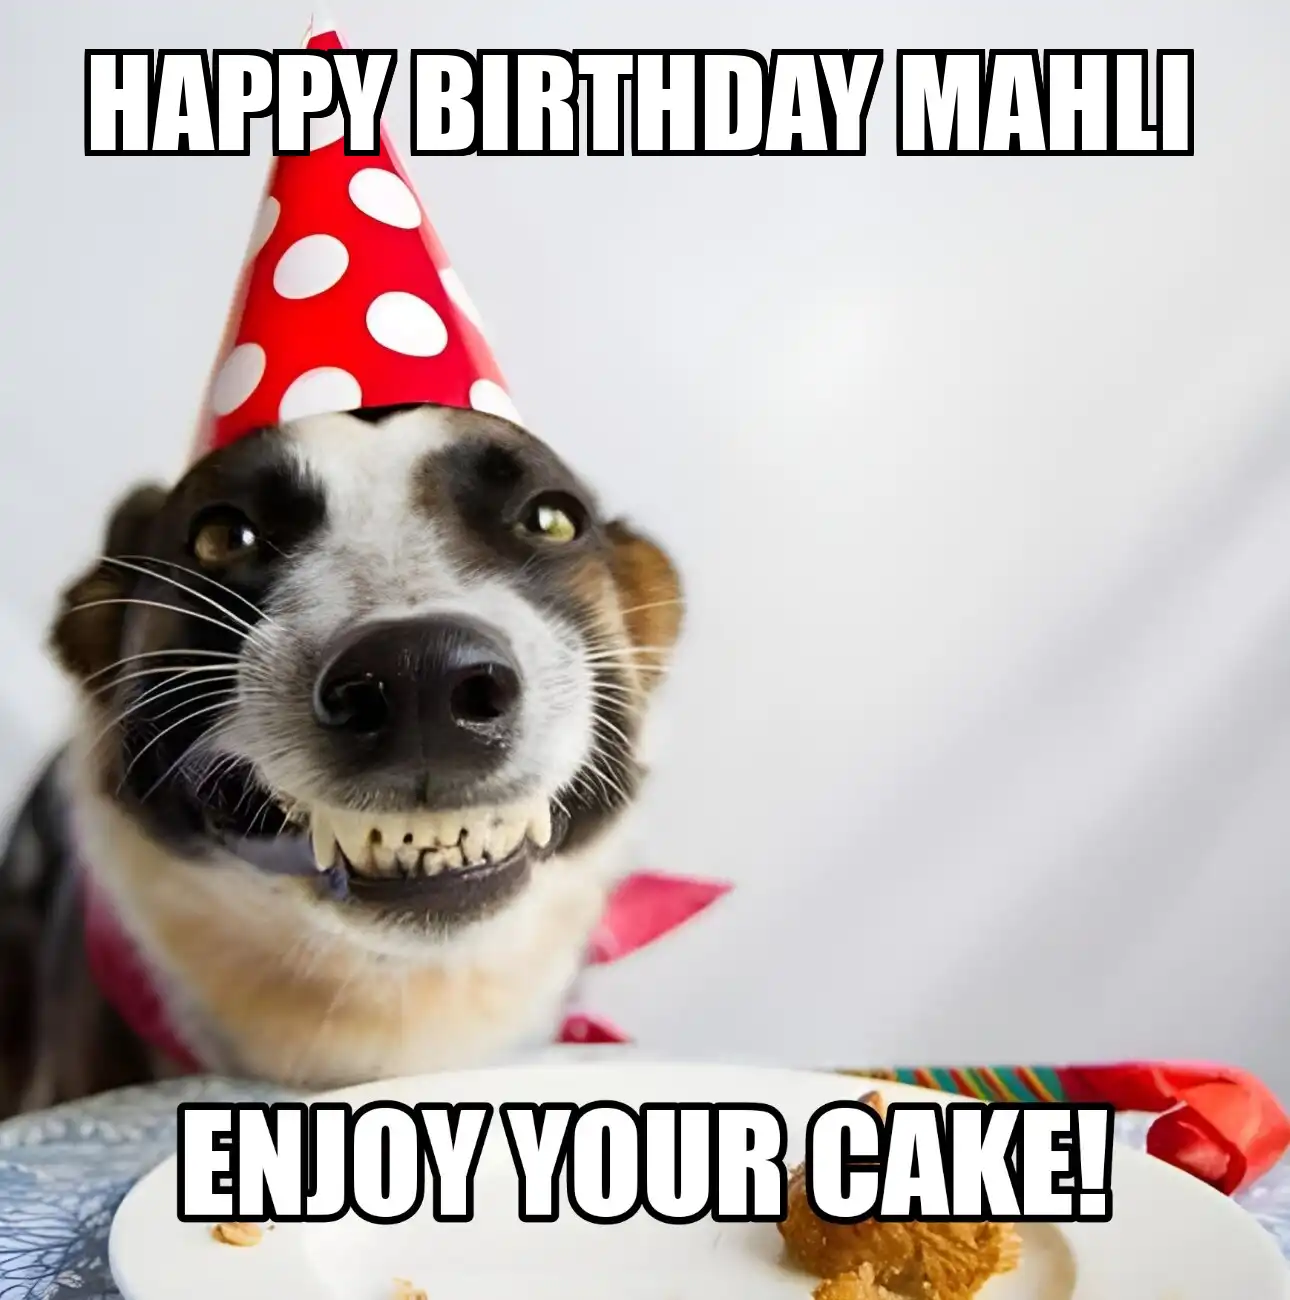 Happy Birthday Mahli Enjoy Your Cake Dog Meme